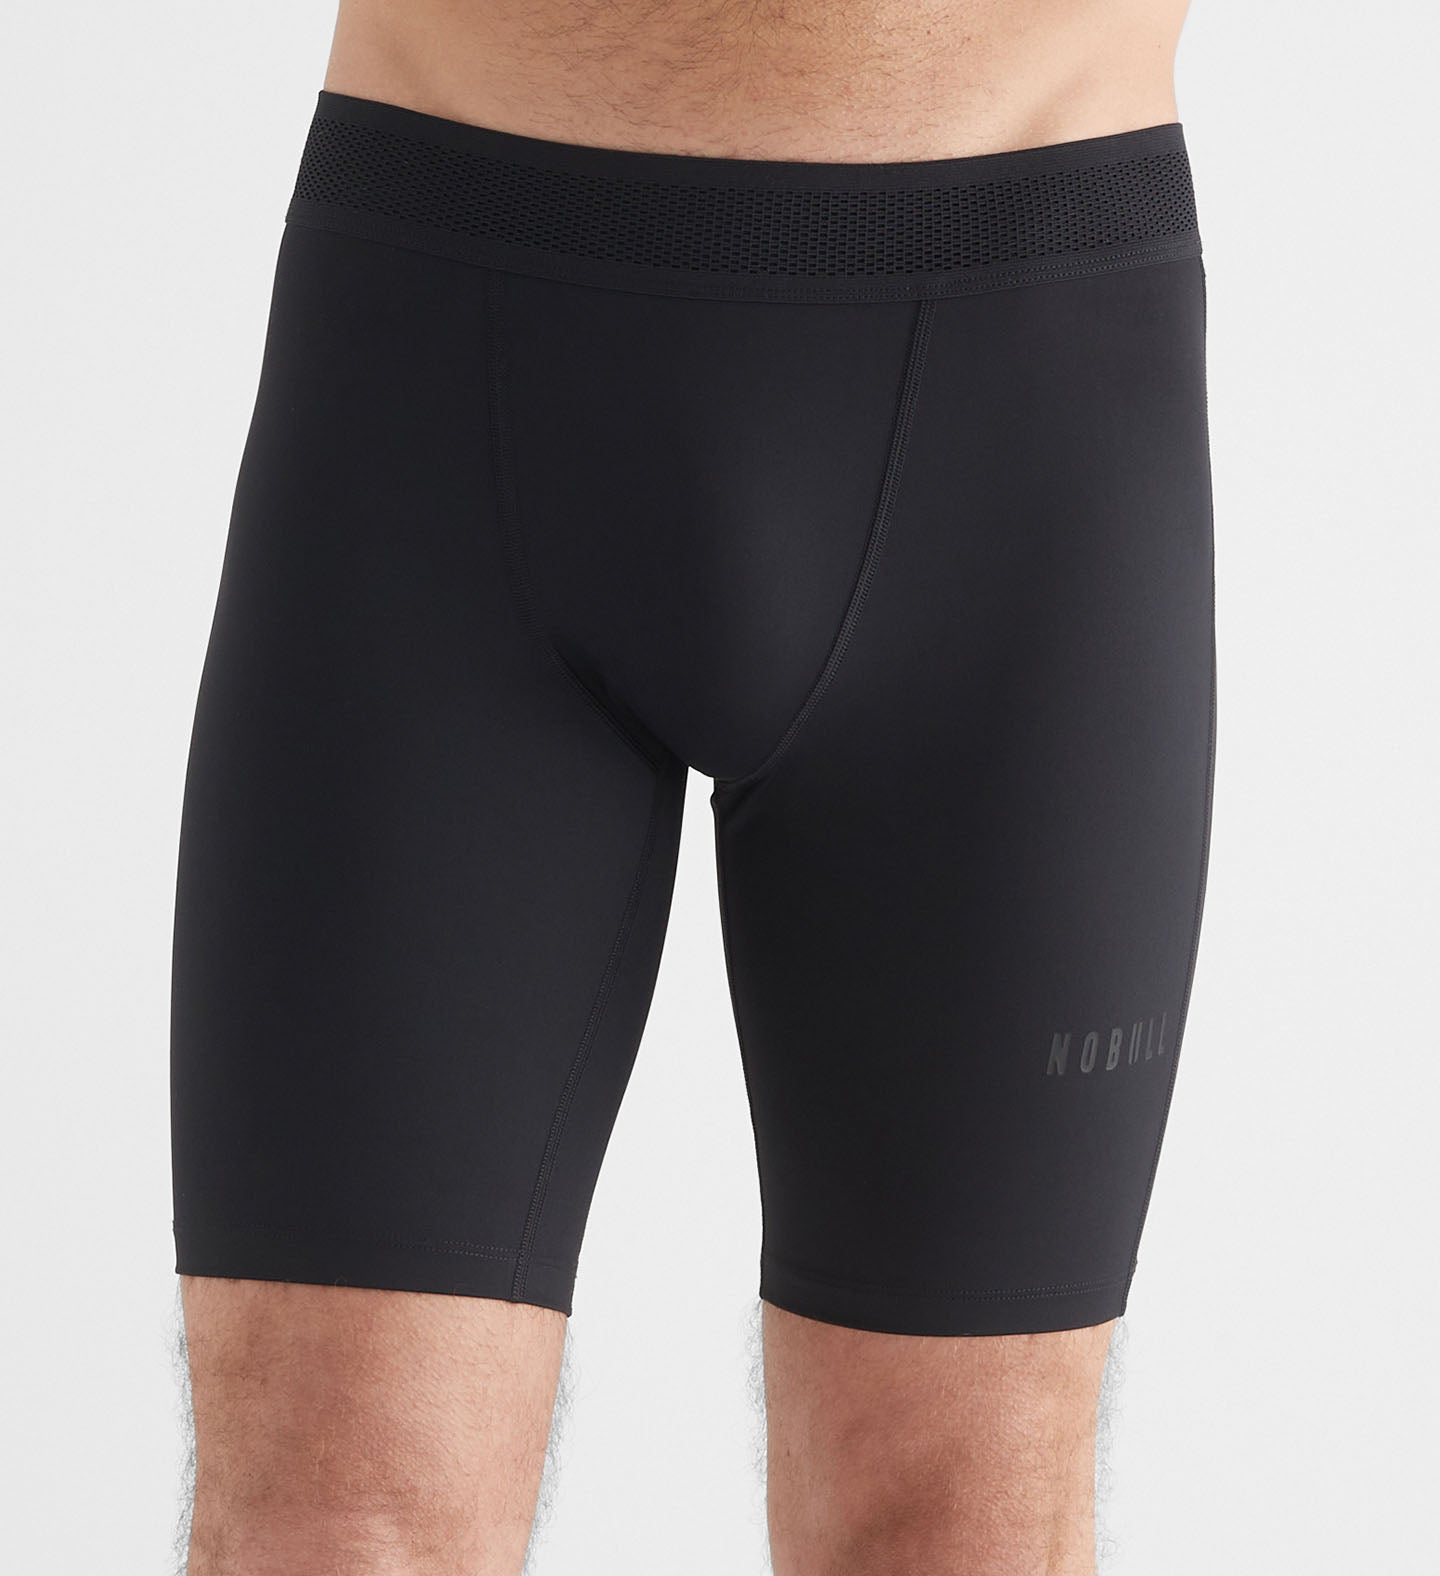 Men's Compression Shorts, 9